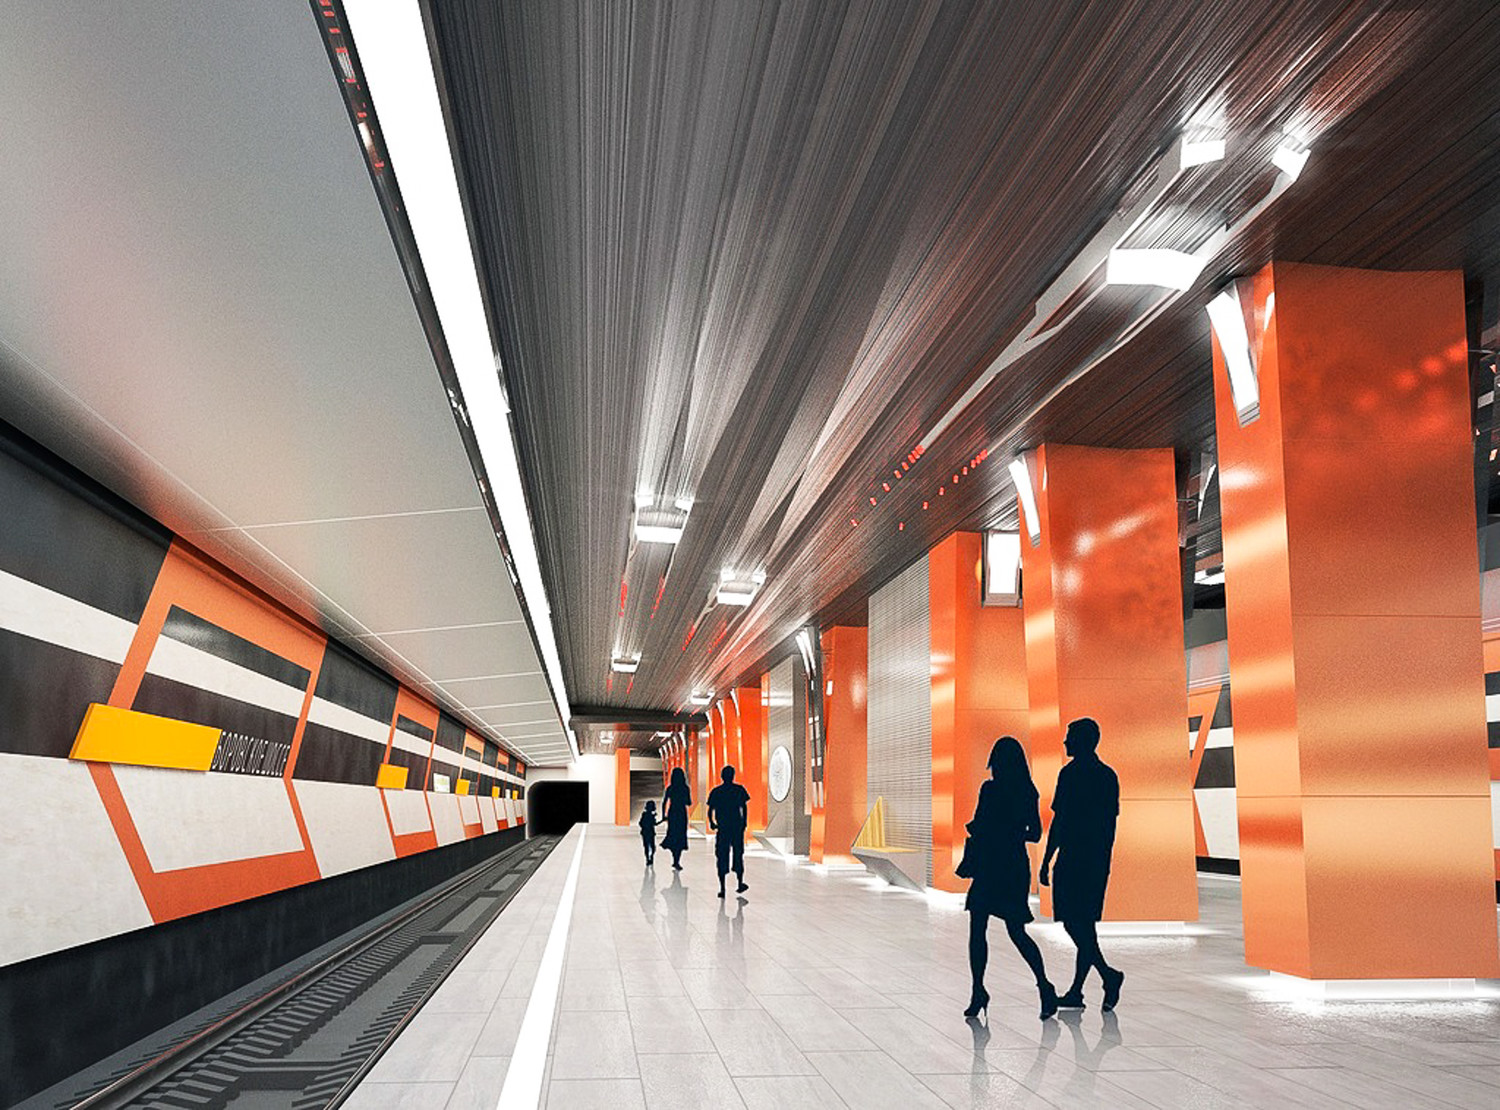 Завершается отделка платформы станции метро Боровское шоссе